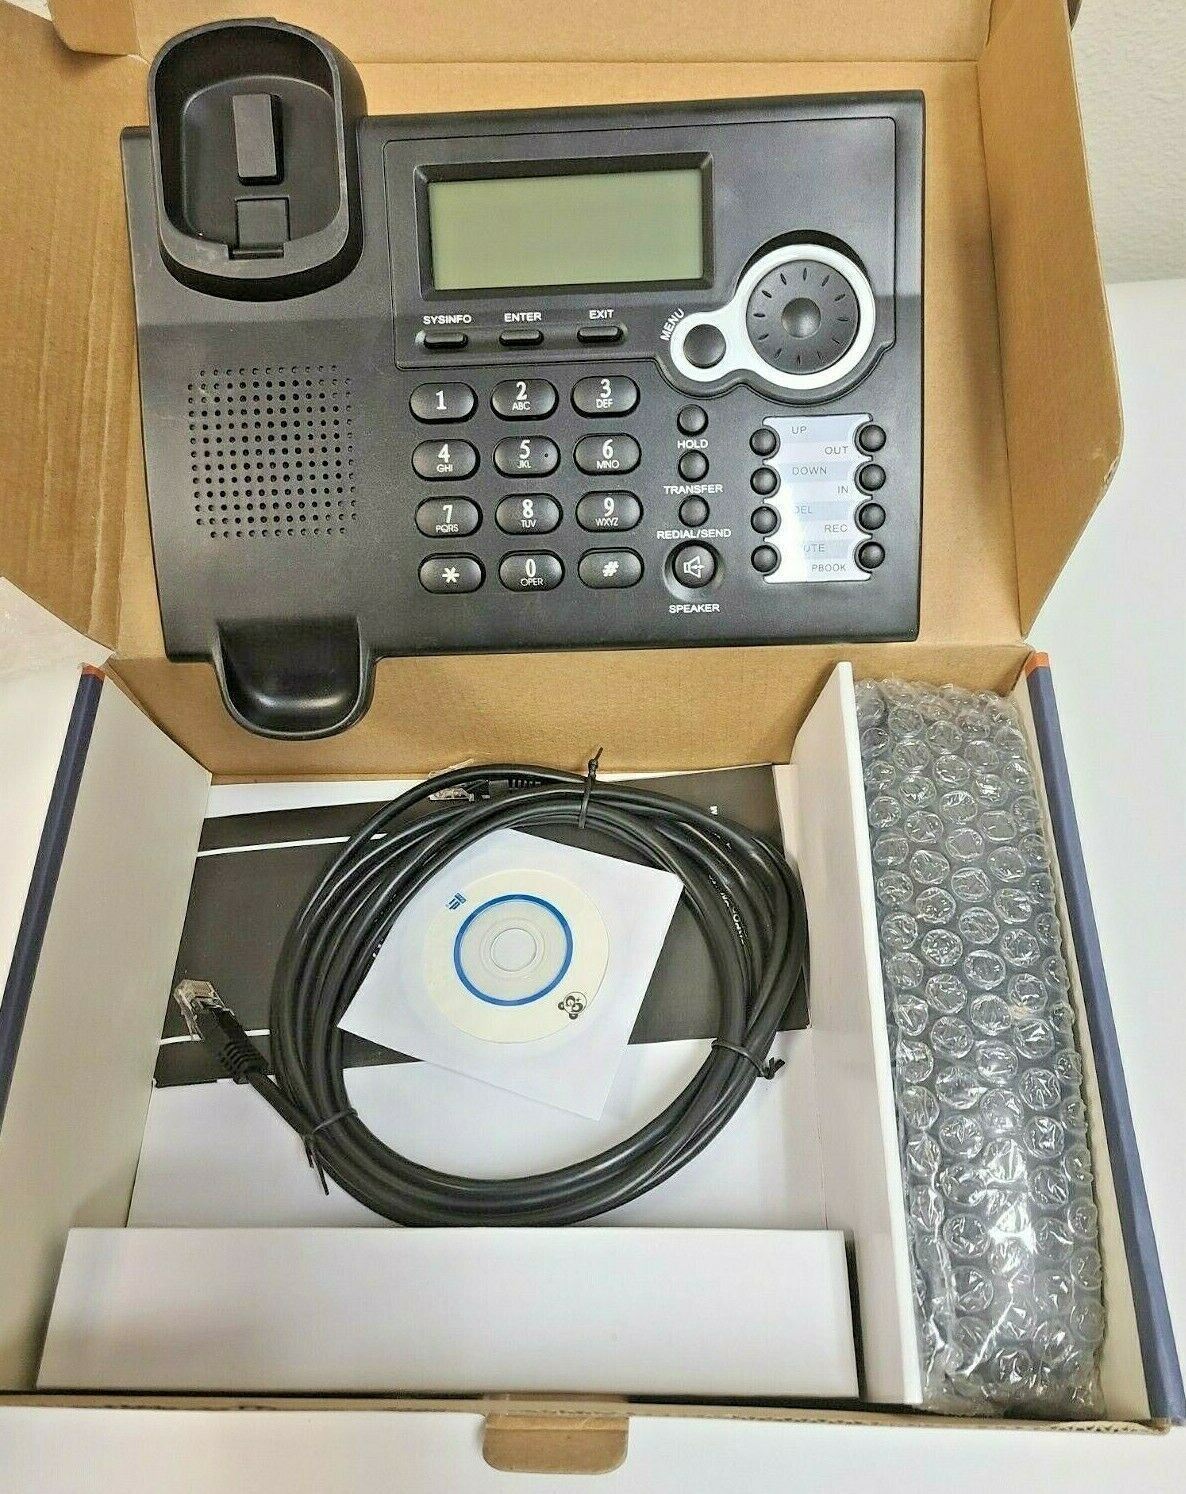 Lot of 10 VoIP IP Phones SIP WAN FV6020 Fanvil Gigabit Office Support IAX IAX2